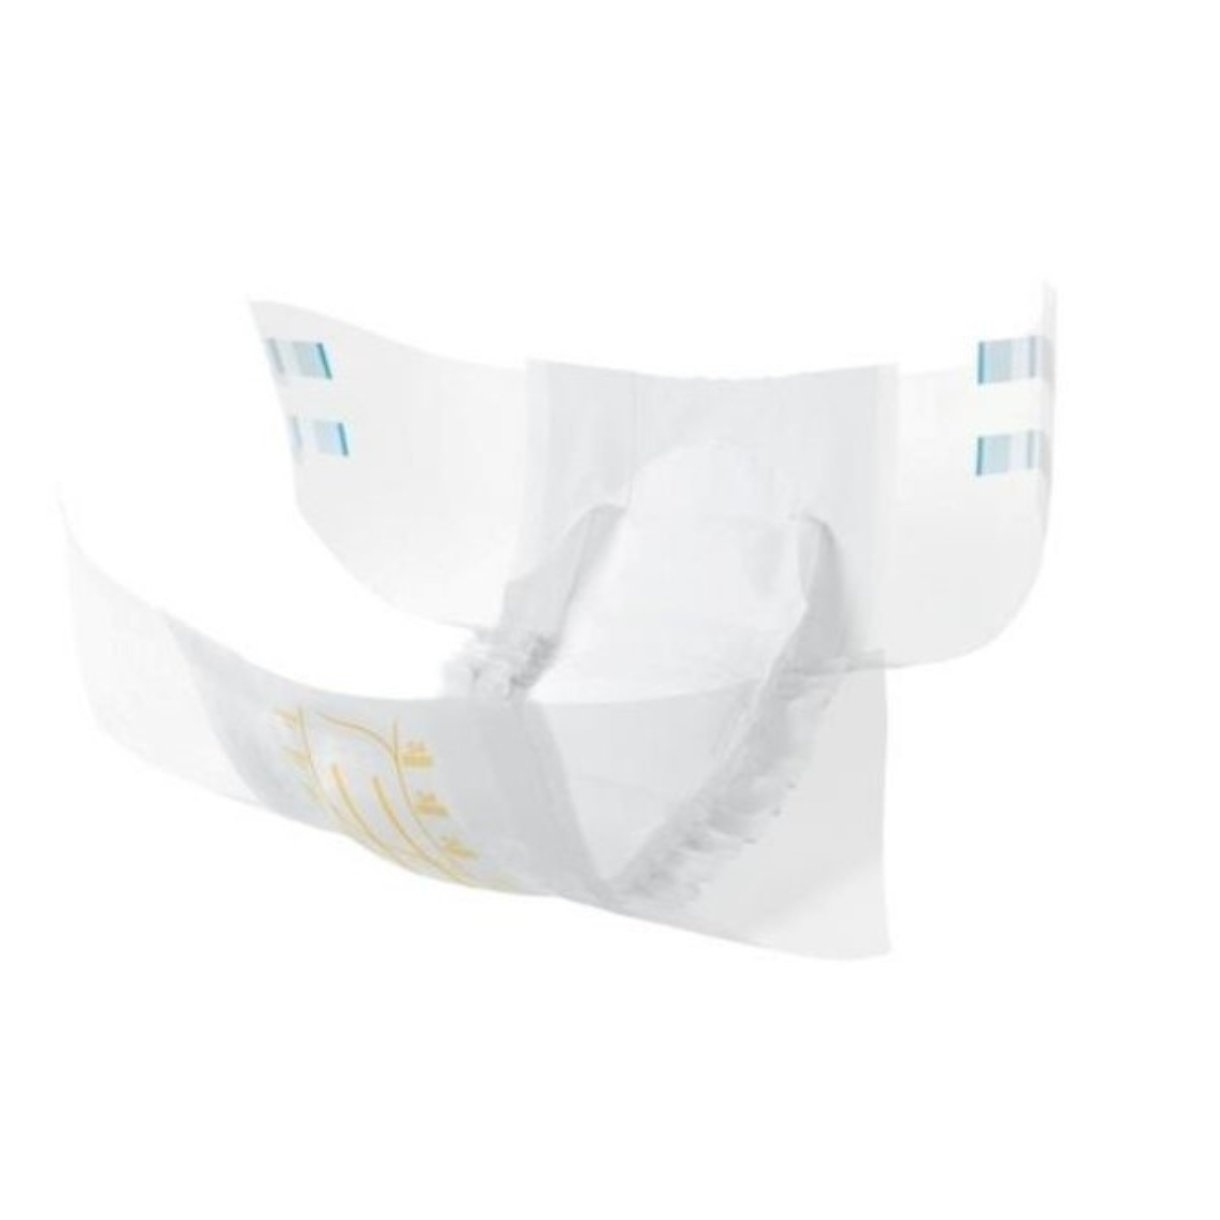 Abena Slip M4 Premium 3600 ml medium unisex briefs (adult diapers)